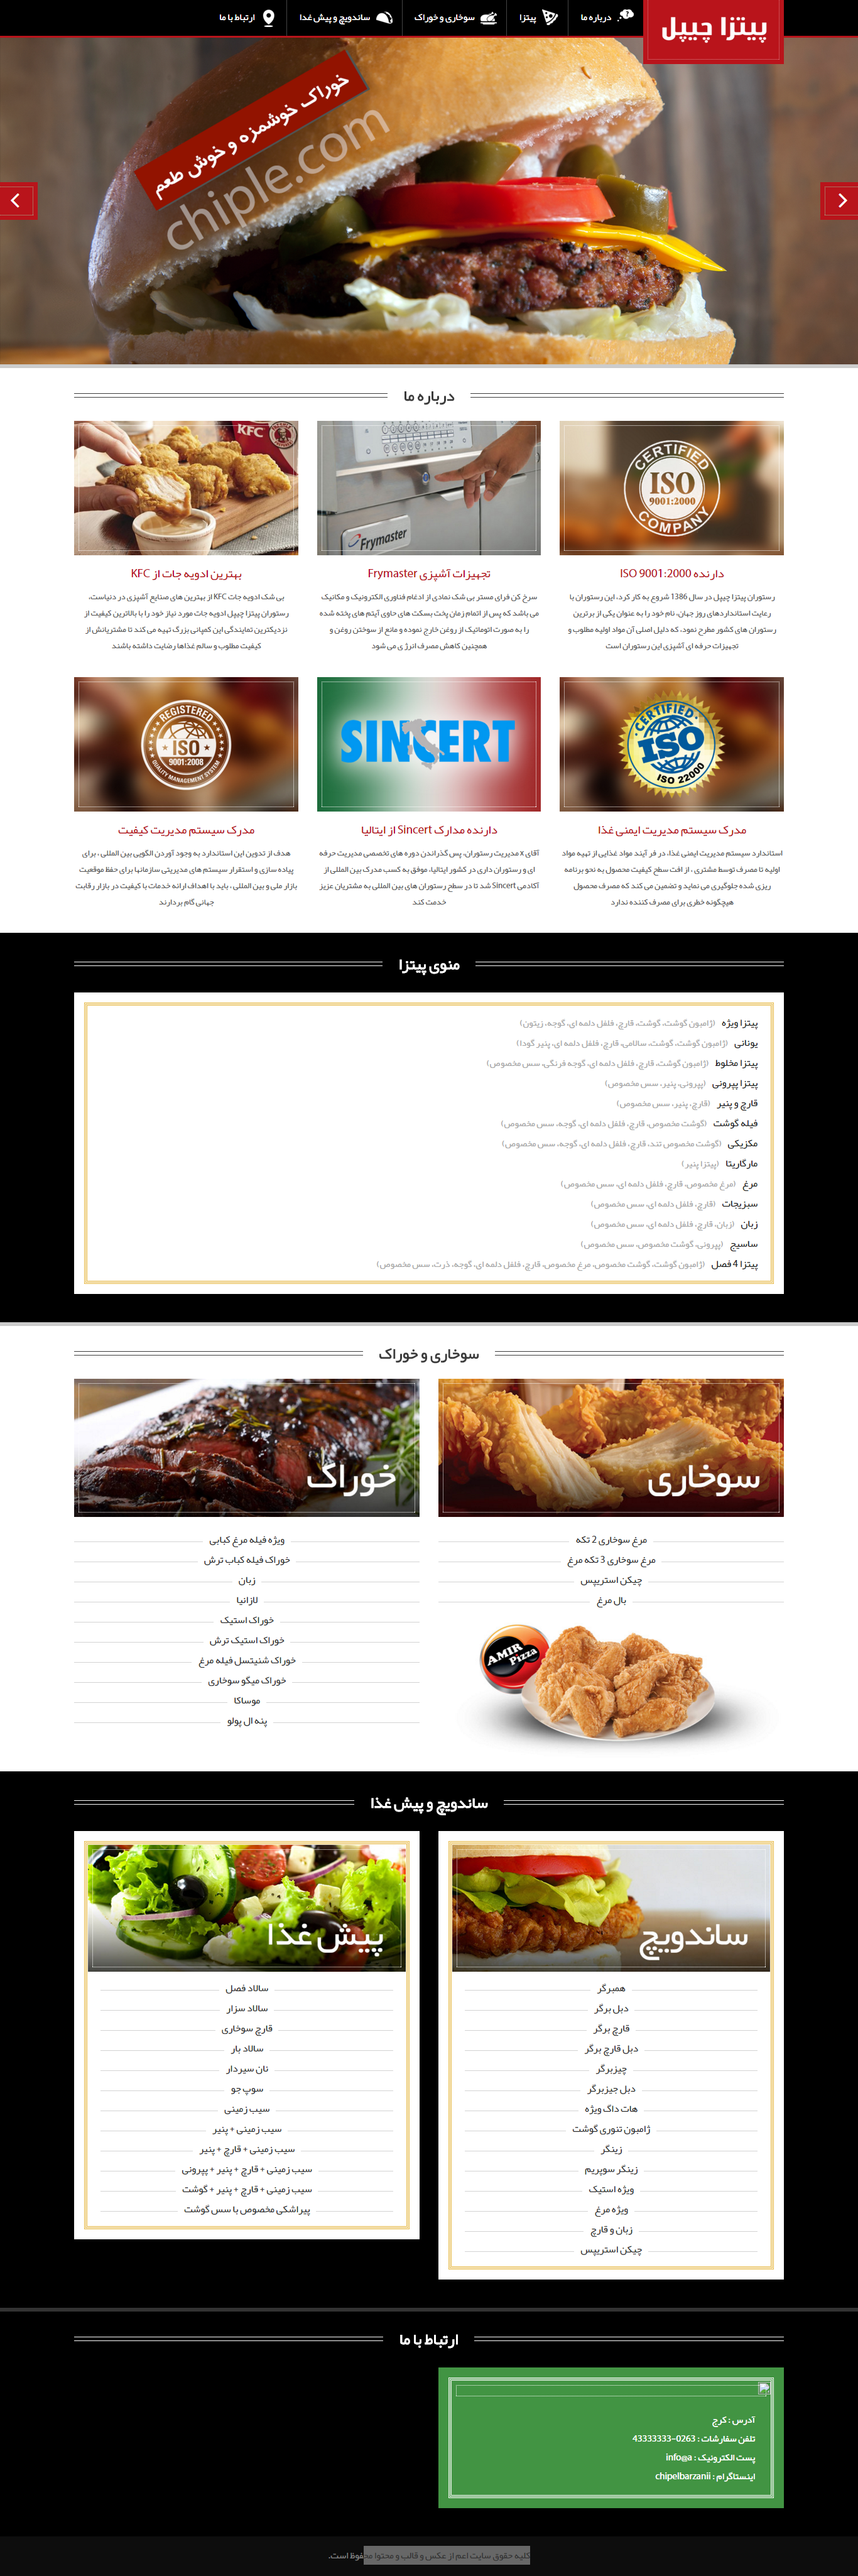 طراحی سایت پیتزا چیپل